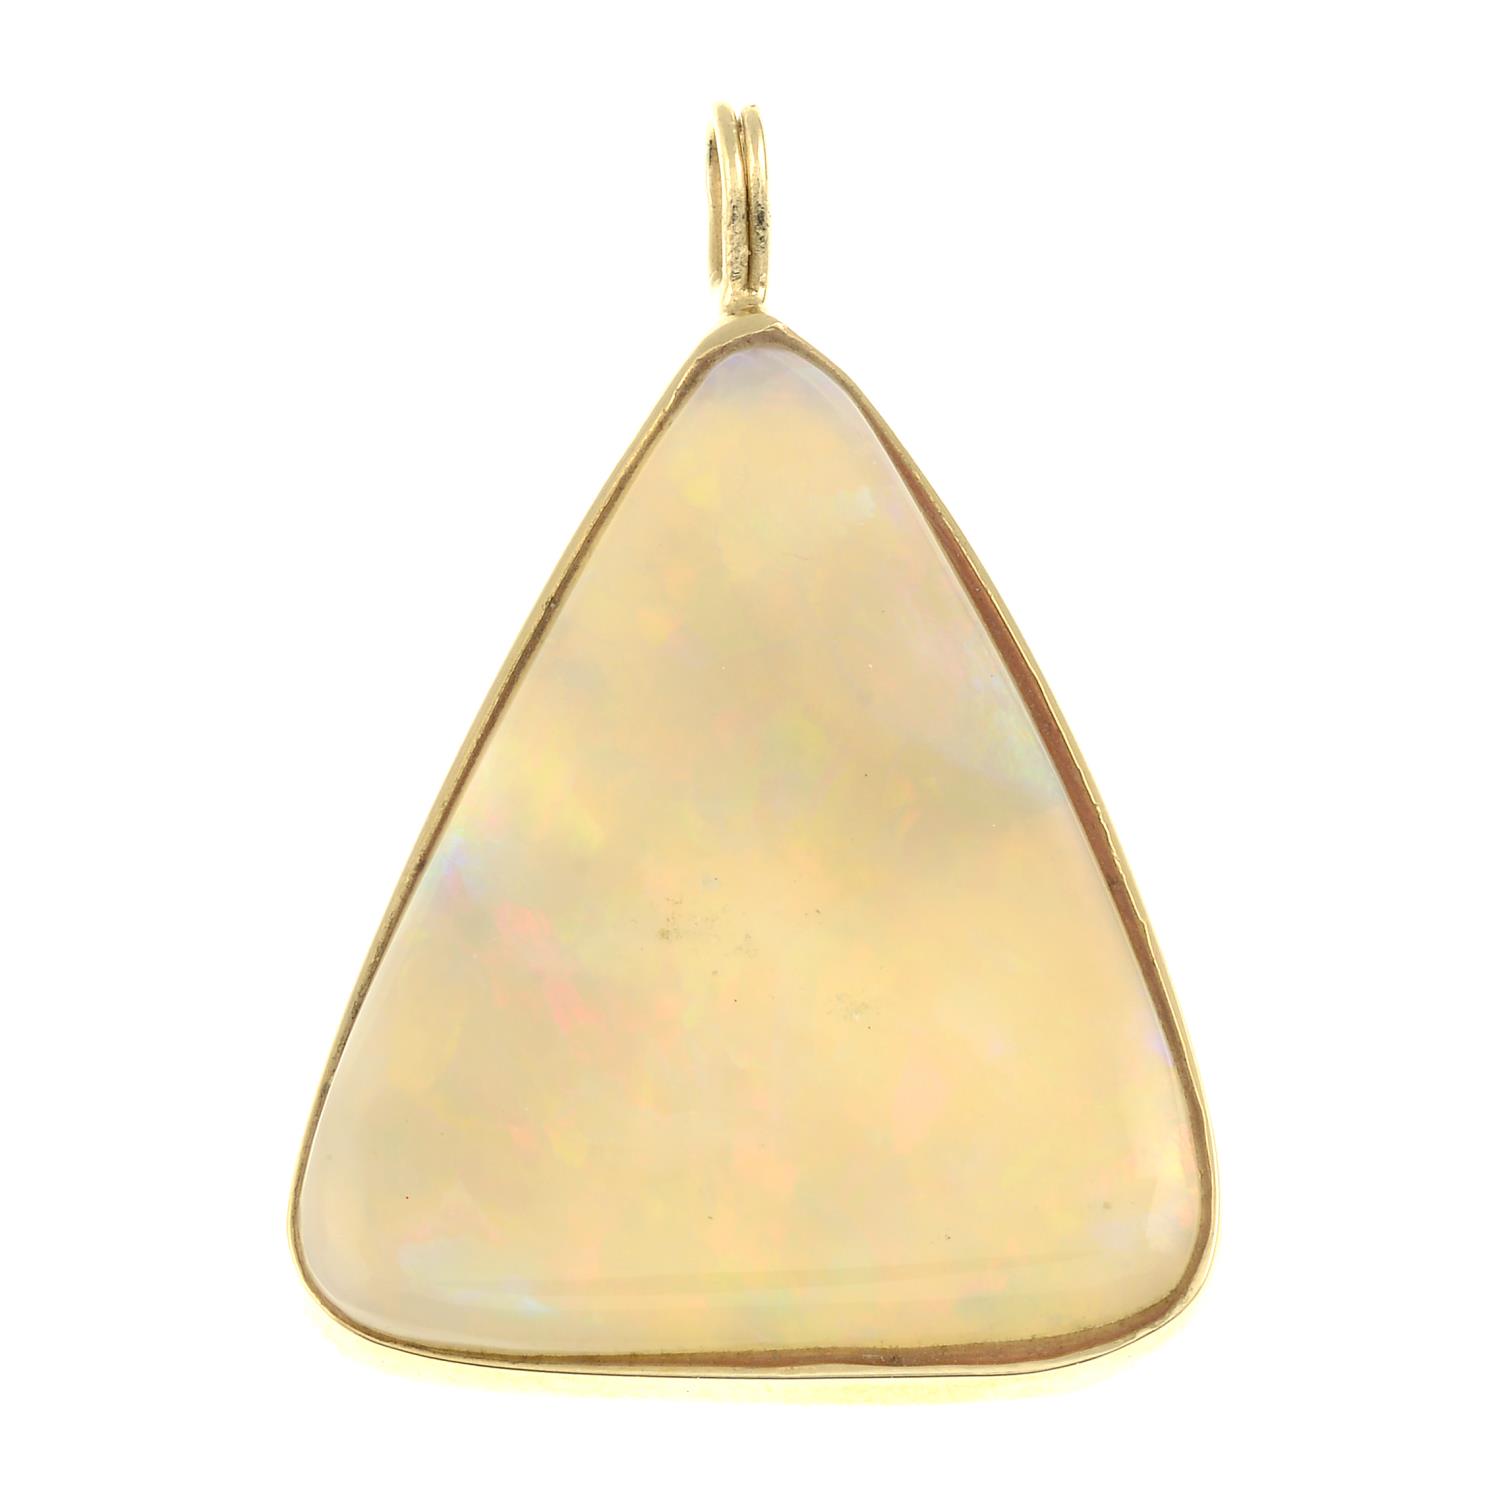 An opal pendant.